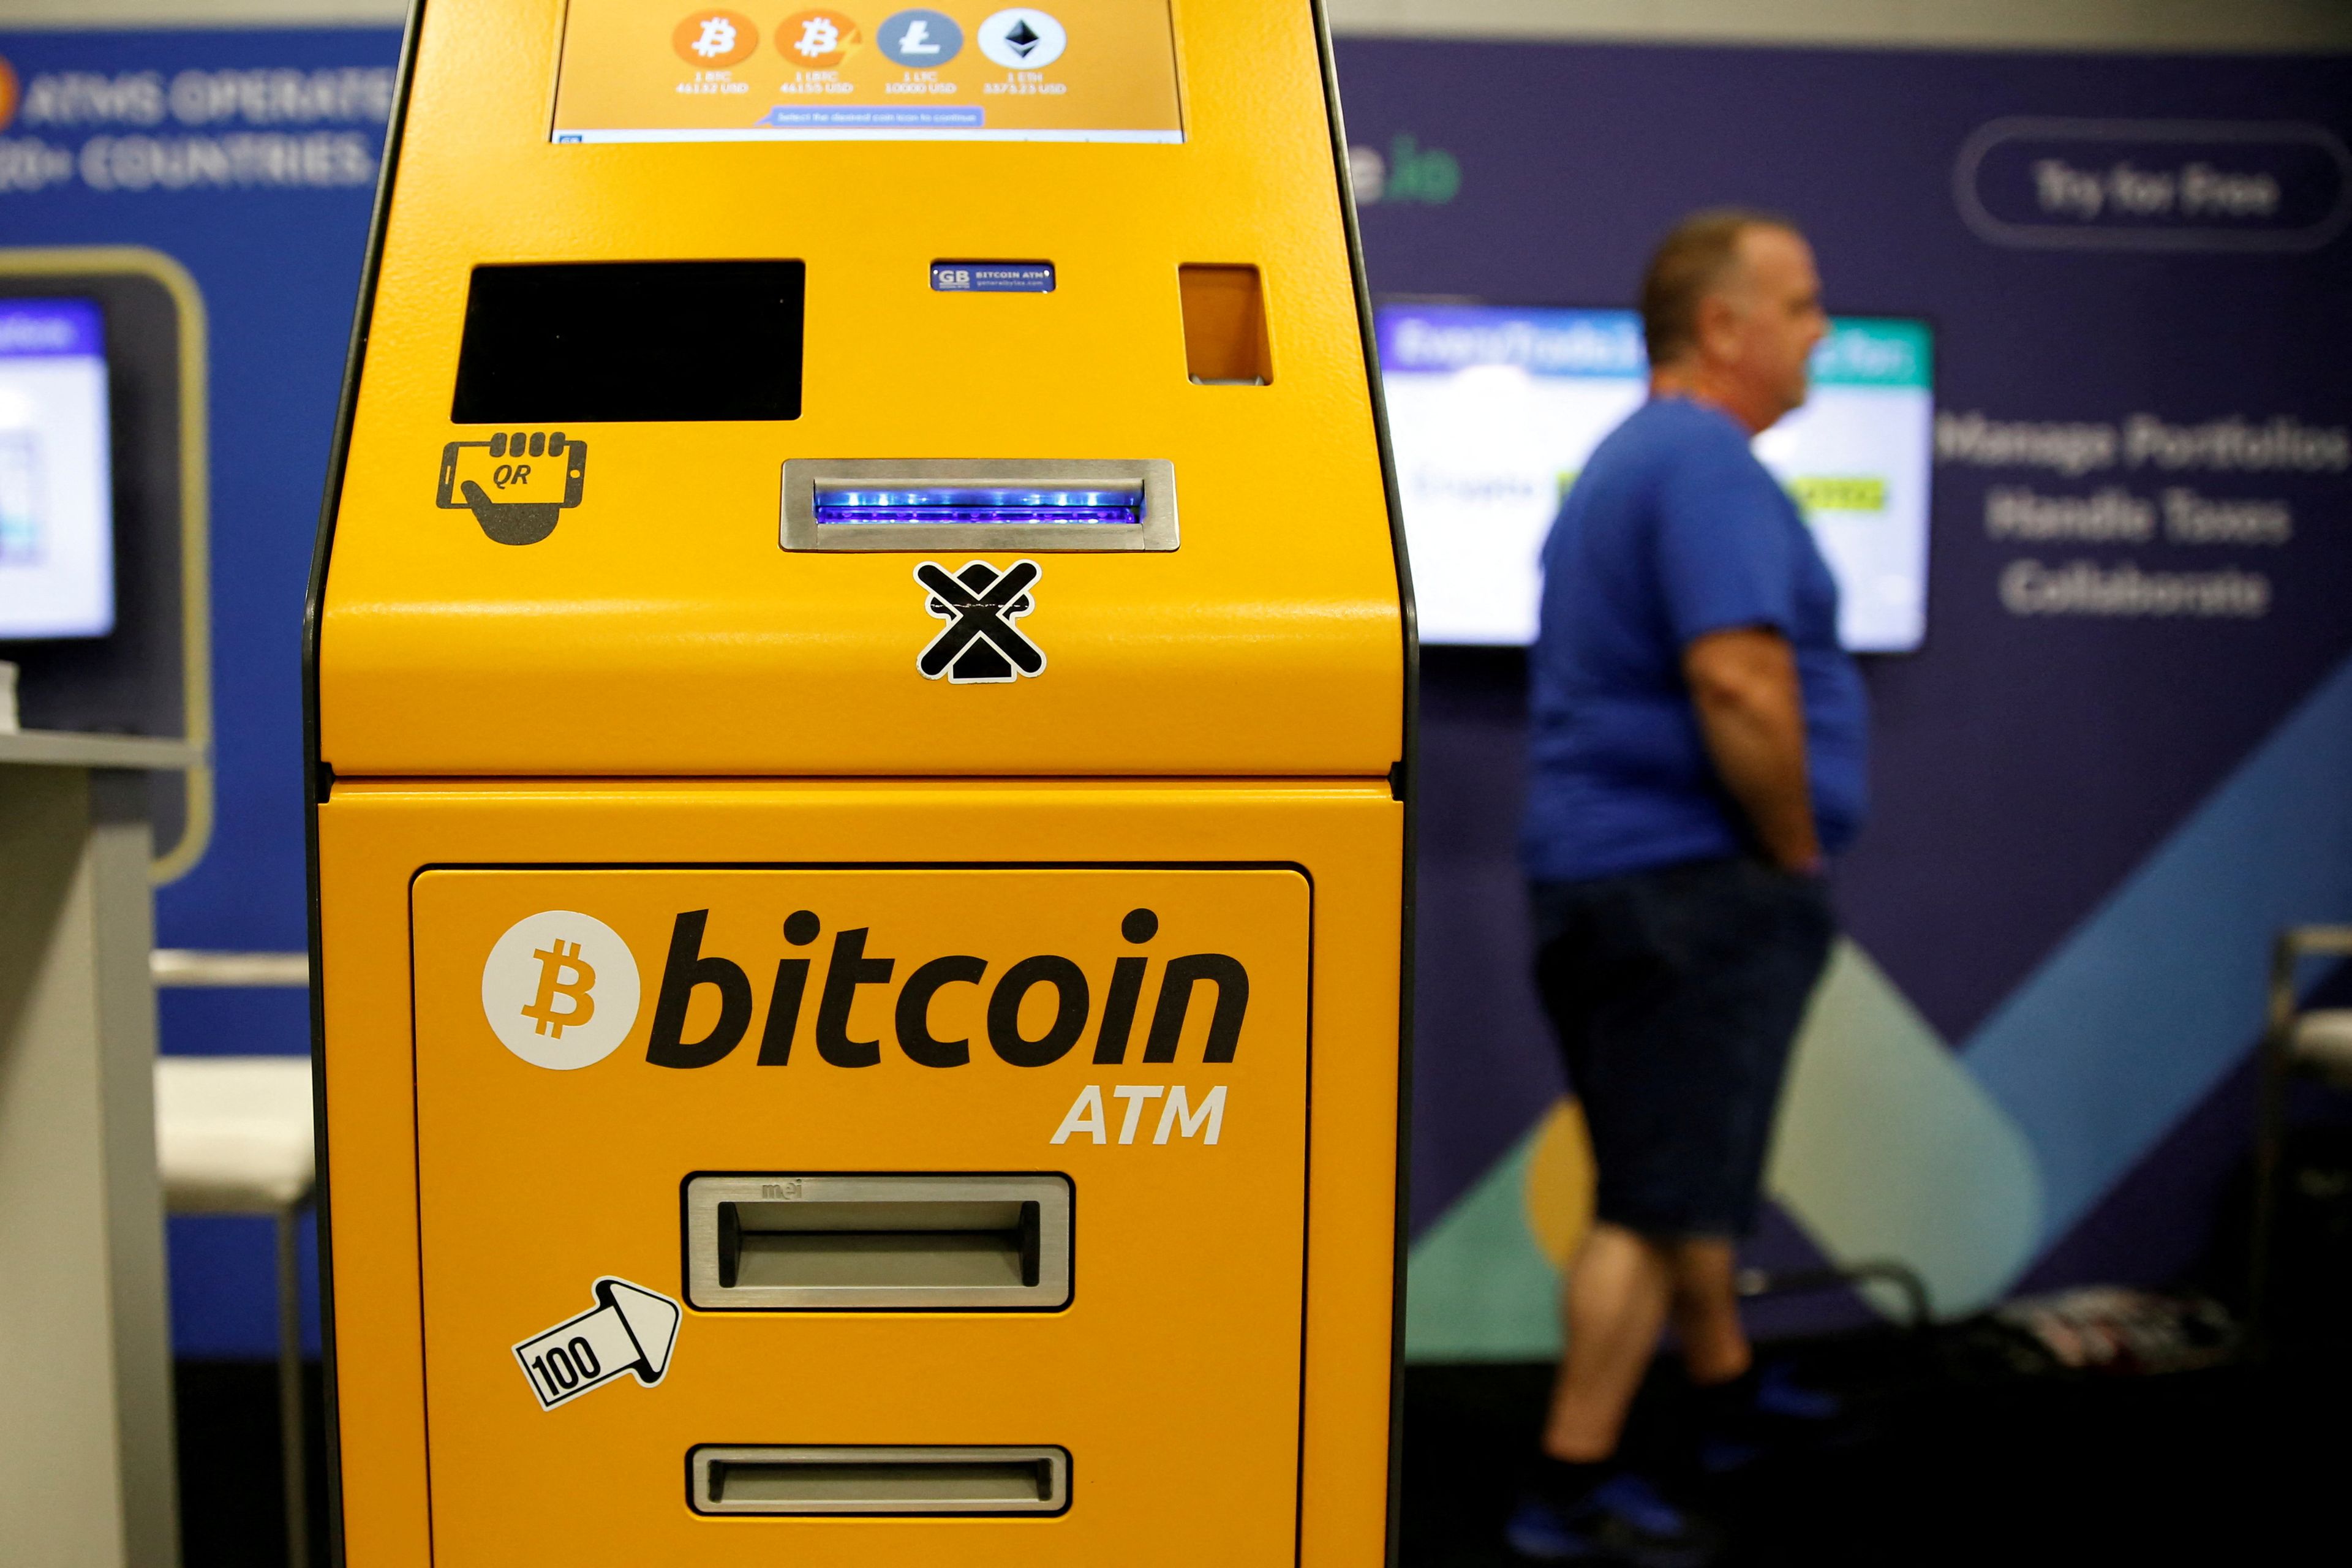 Cajero de bitcoin (ATM)